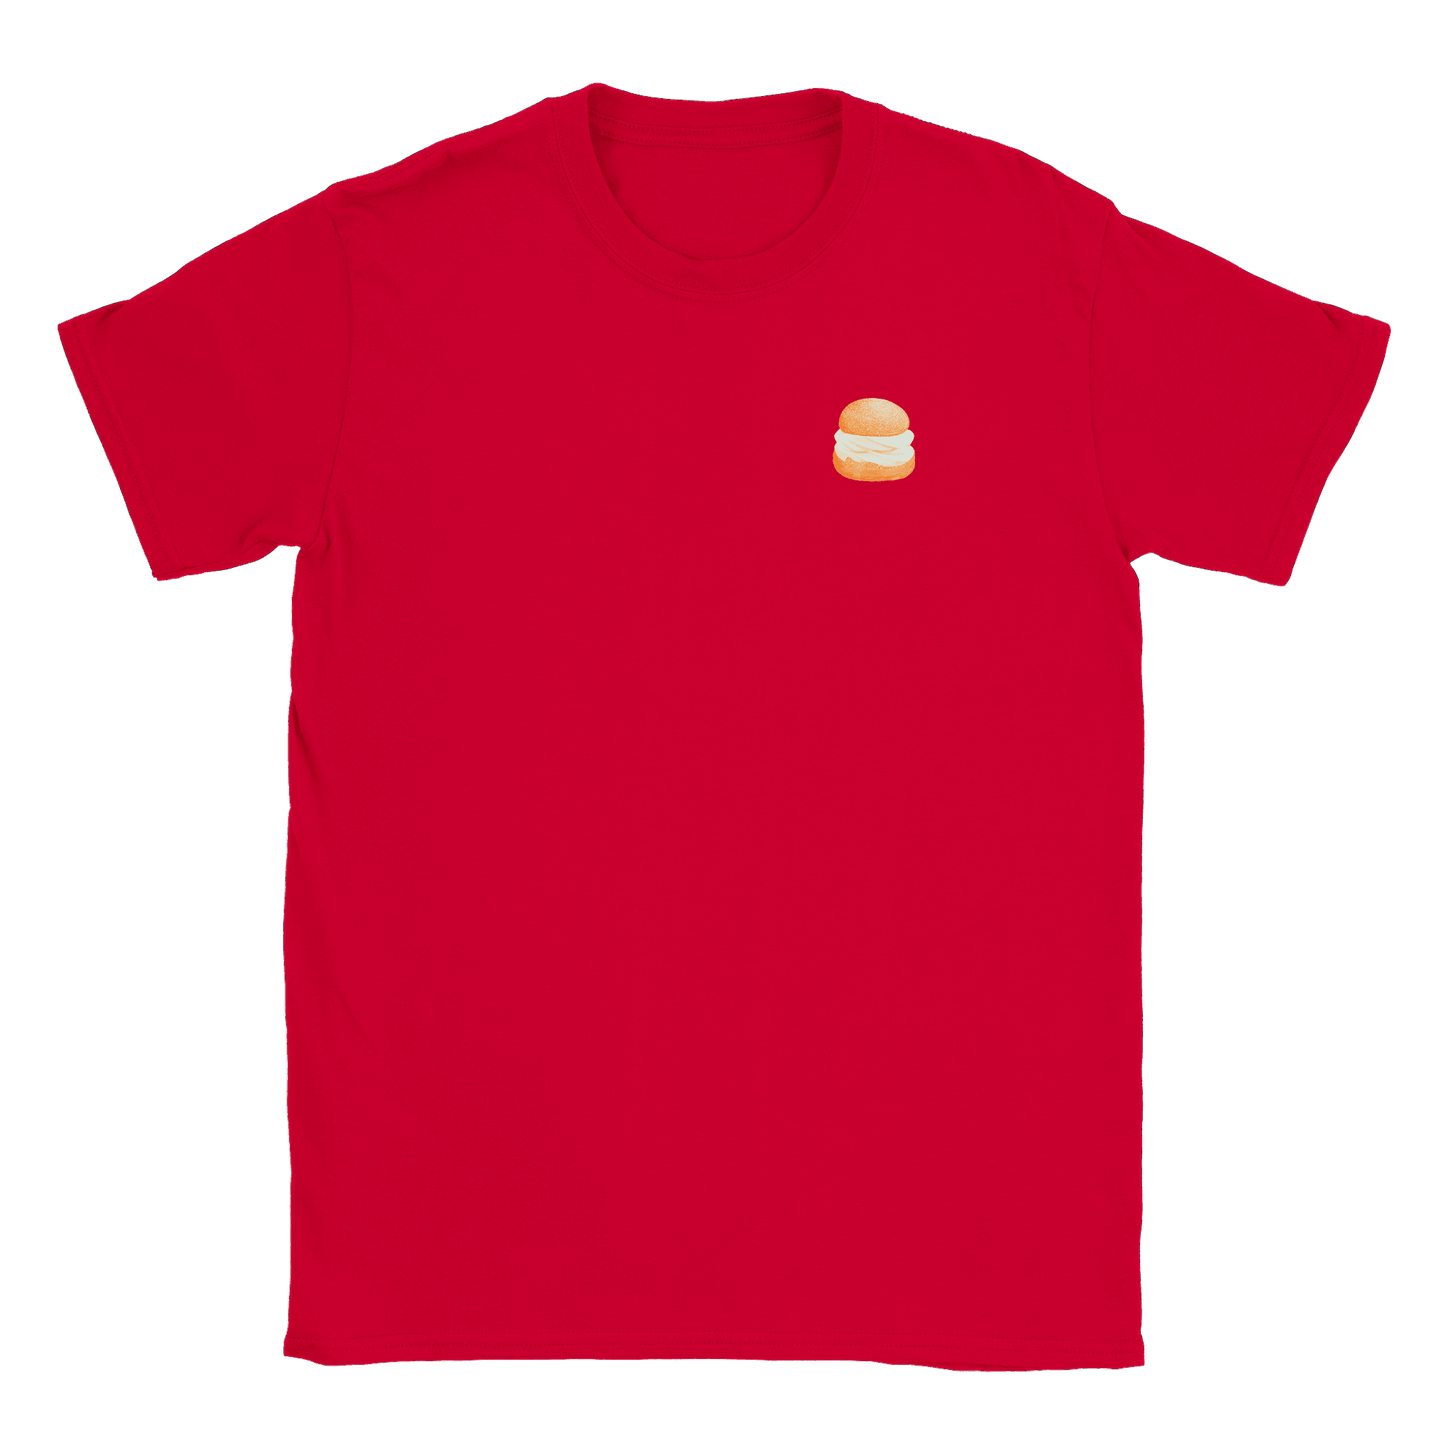 Liten Semla - T-shirt Röd